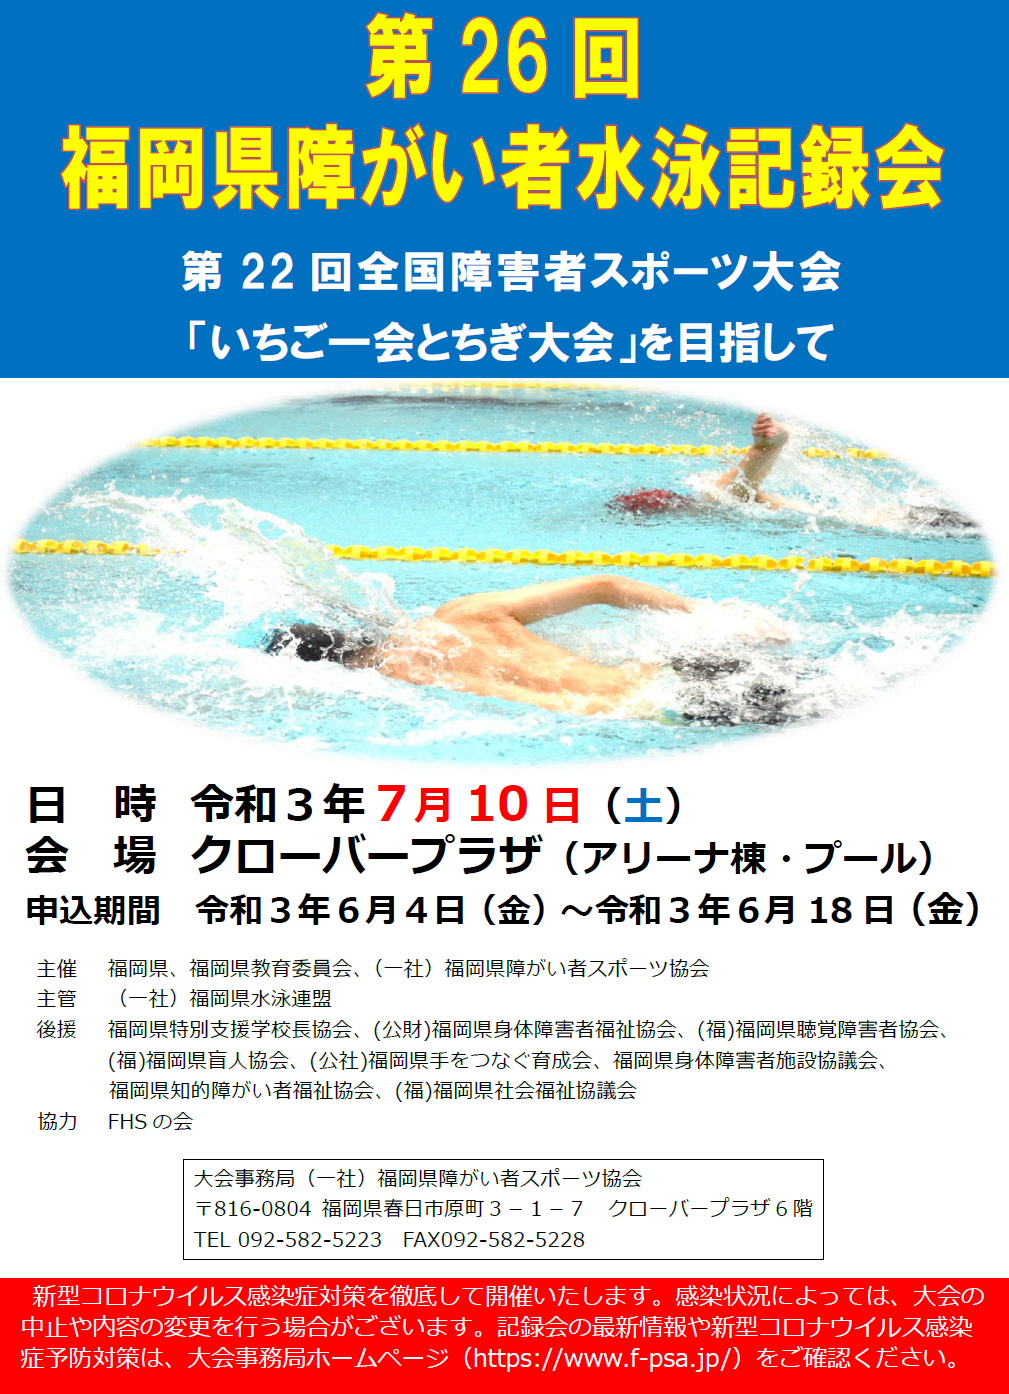 写真:第26回福岡県障がい者水泳記録会のポスターです